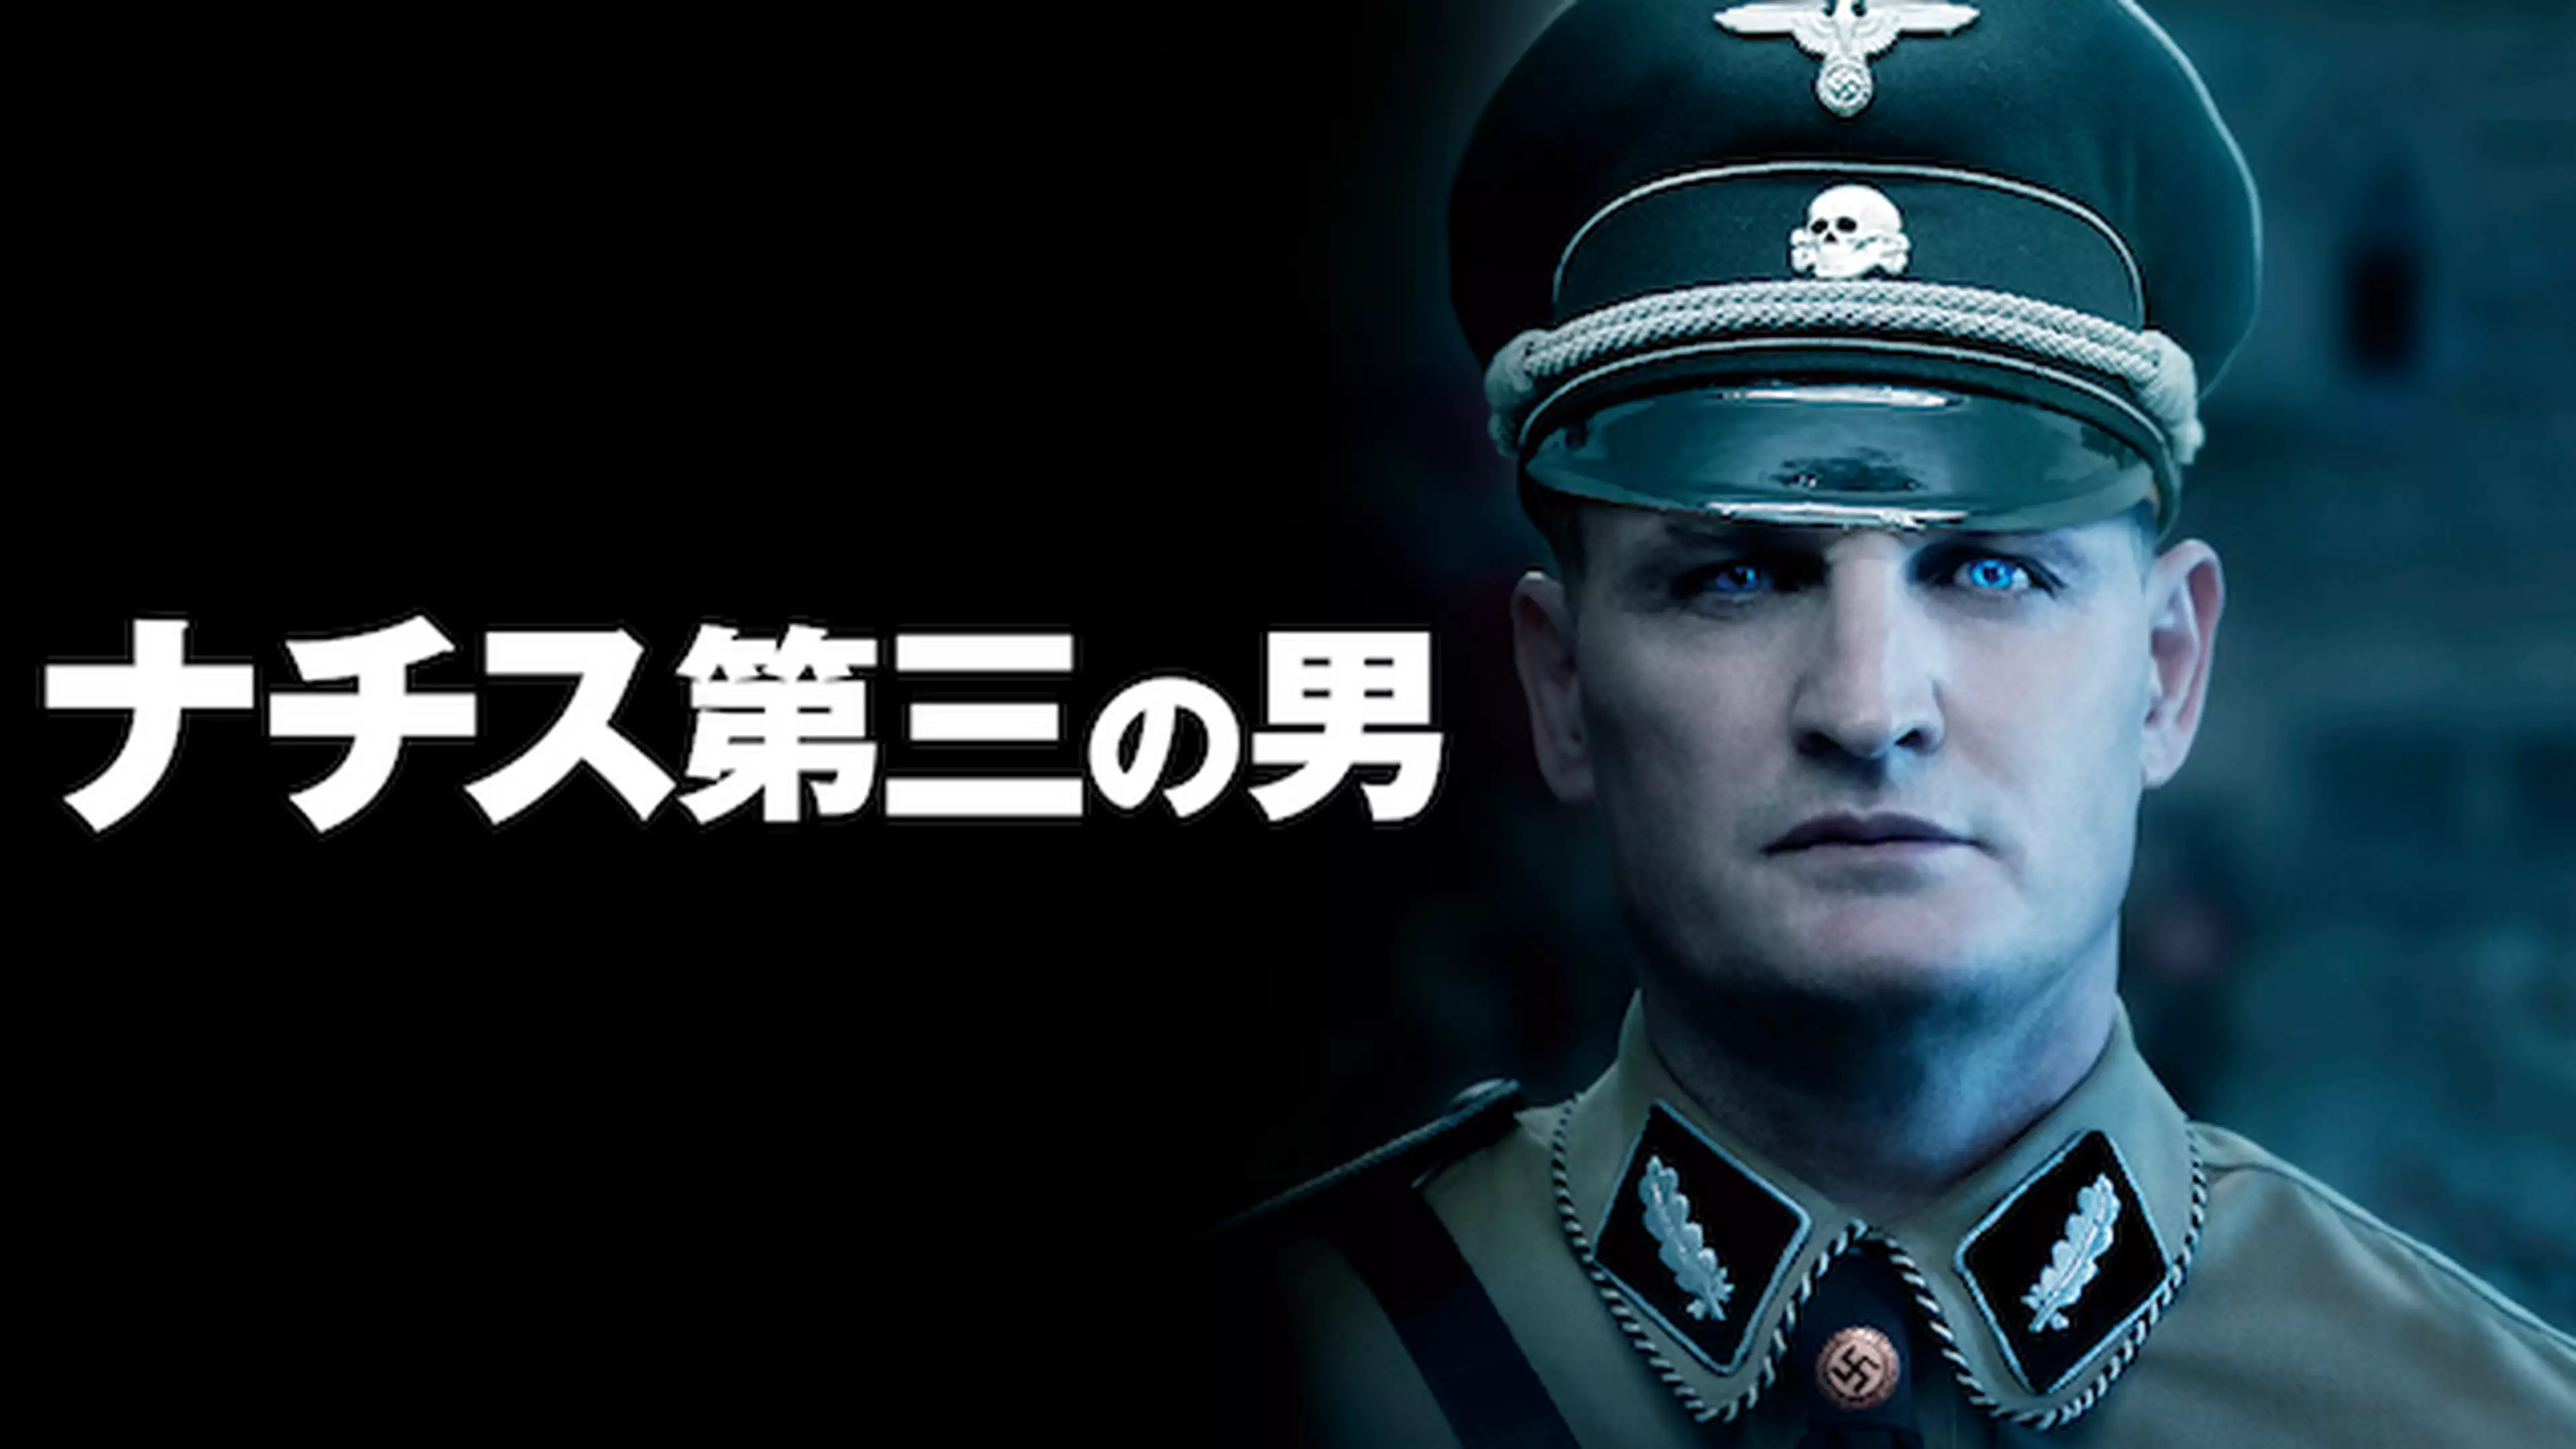 ハイドリヒの生涯 名言や彼の最後について解説 ヒトラーよりも冷酷な男 ハイドリヒとは 日本史 世界史